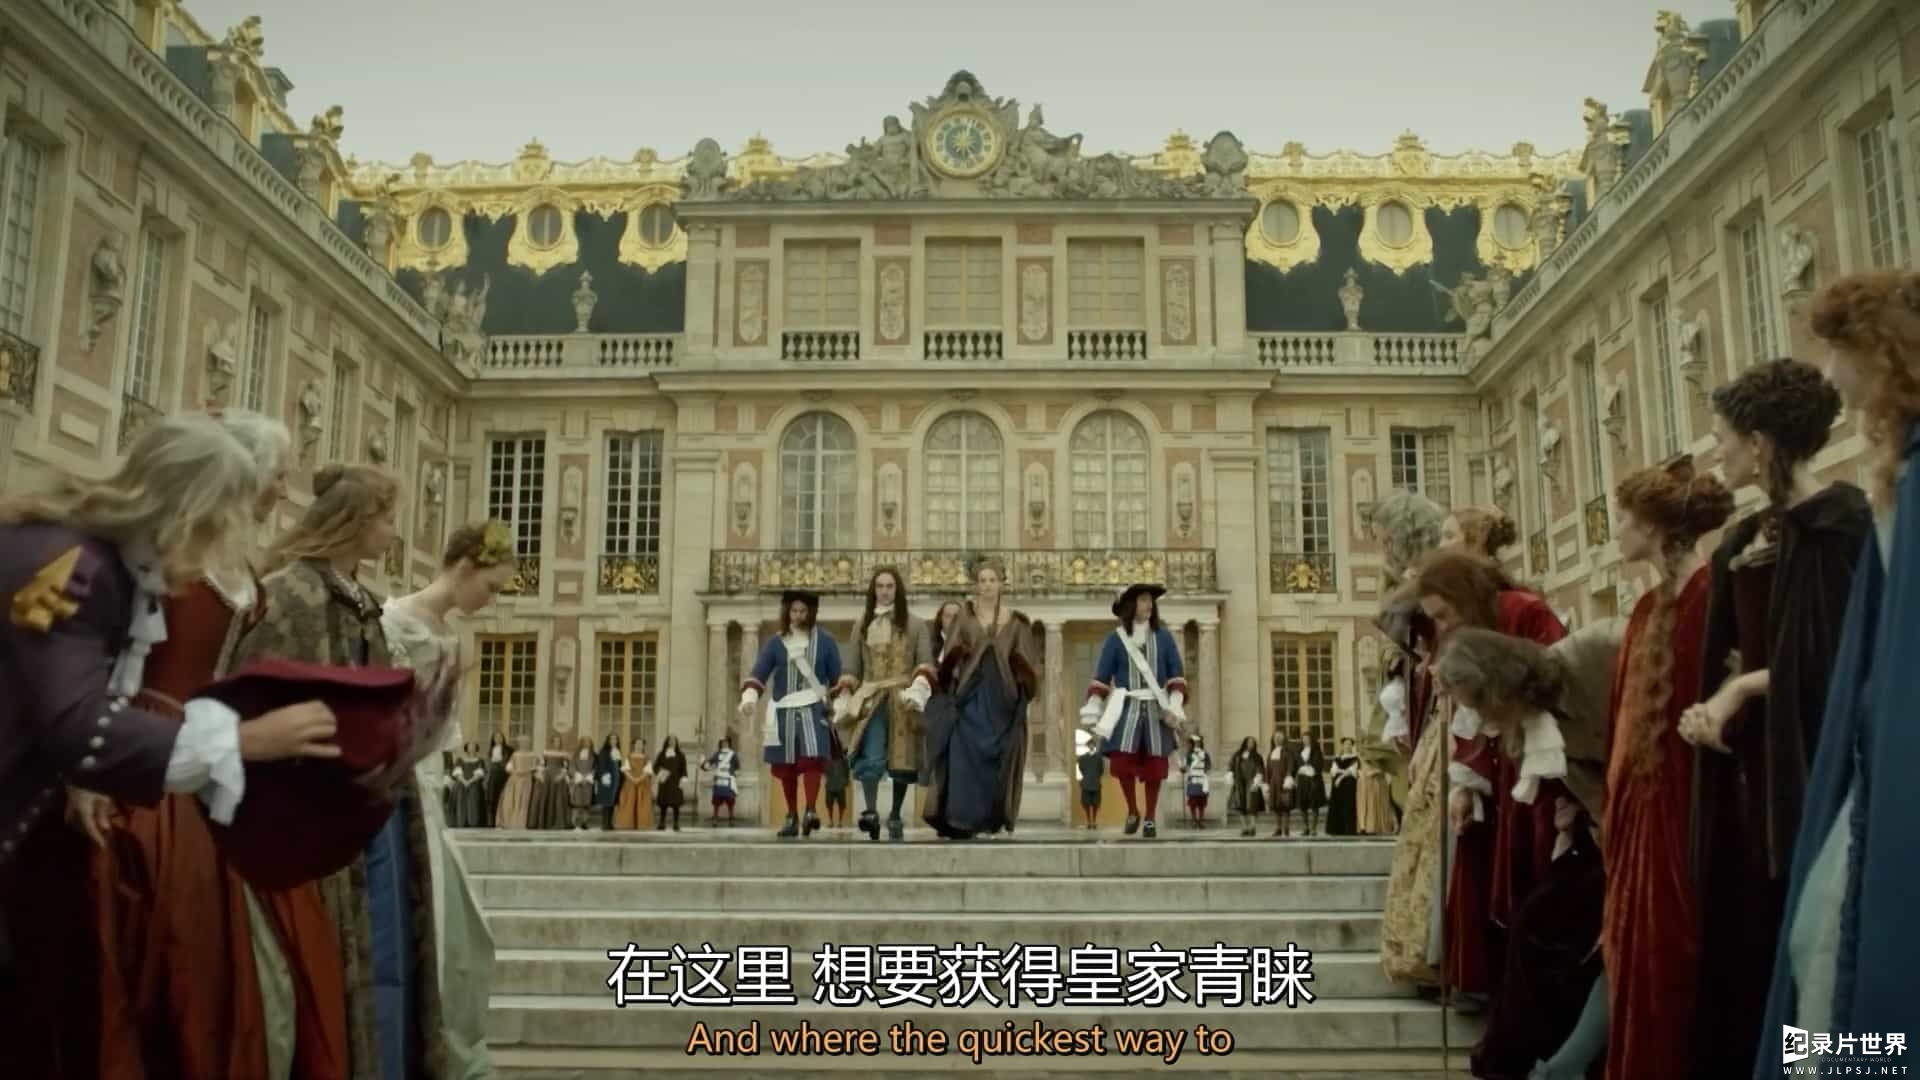 经典纪录片/BBC纪录片《真实的凡尔赛 The Real Versailles》英语中英双字